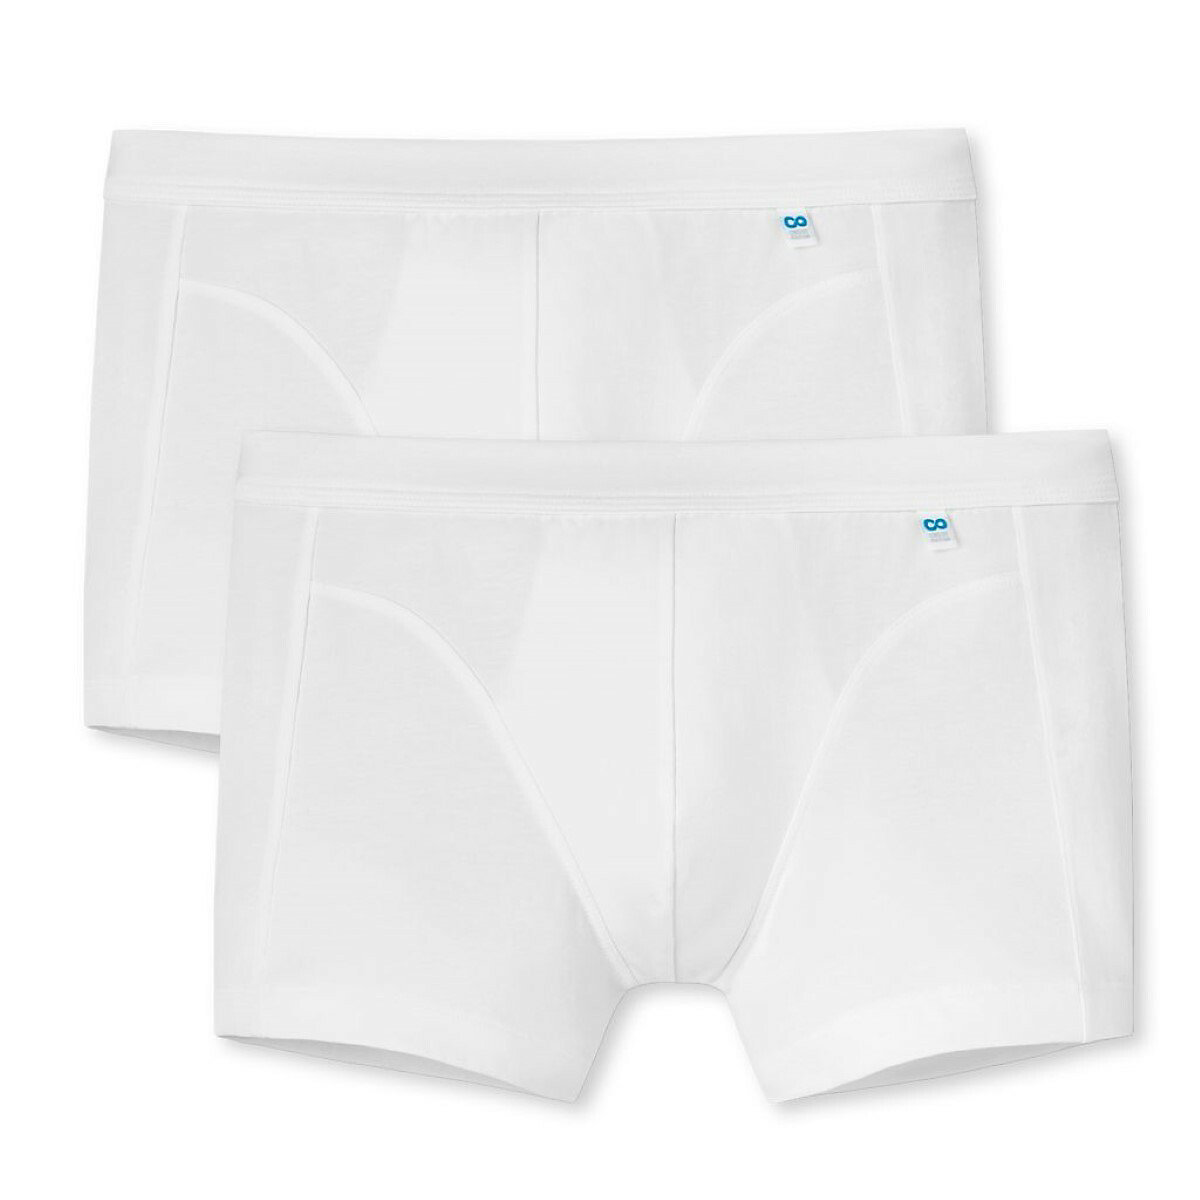 SCHIESSER Shorts Pants 2er Pack Long Life Cotton Panties weiß